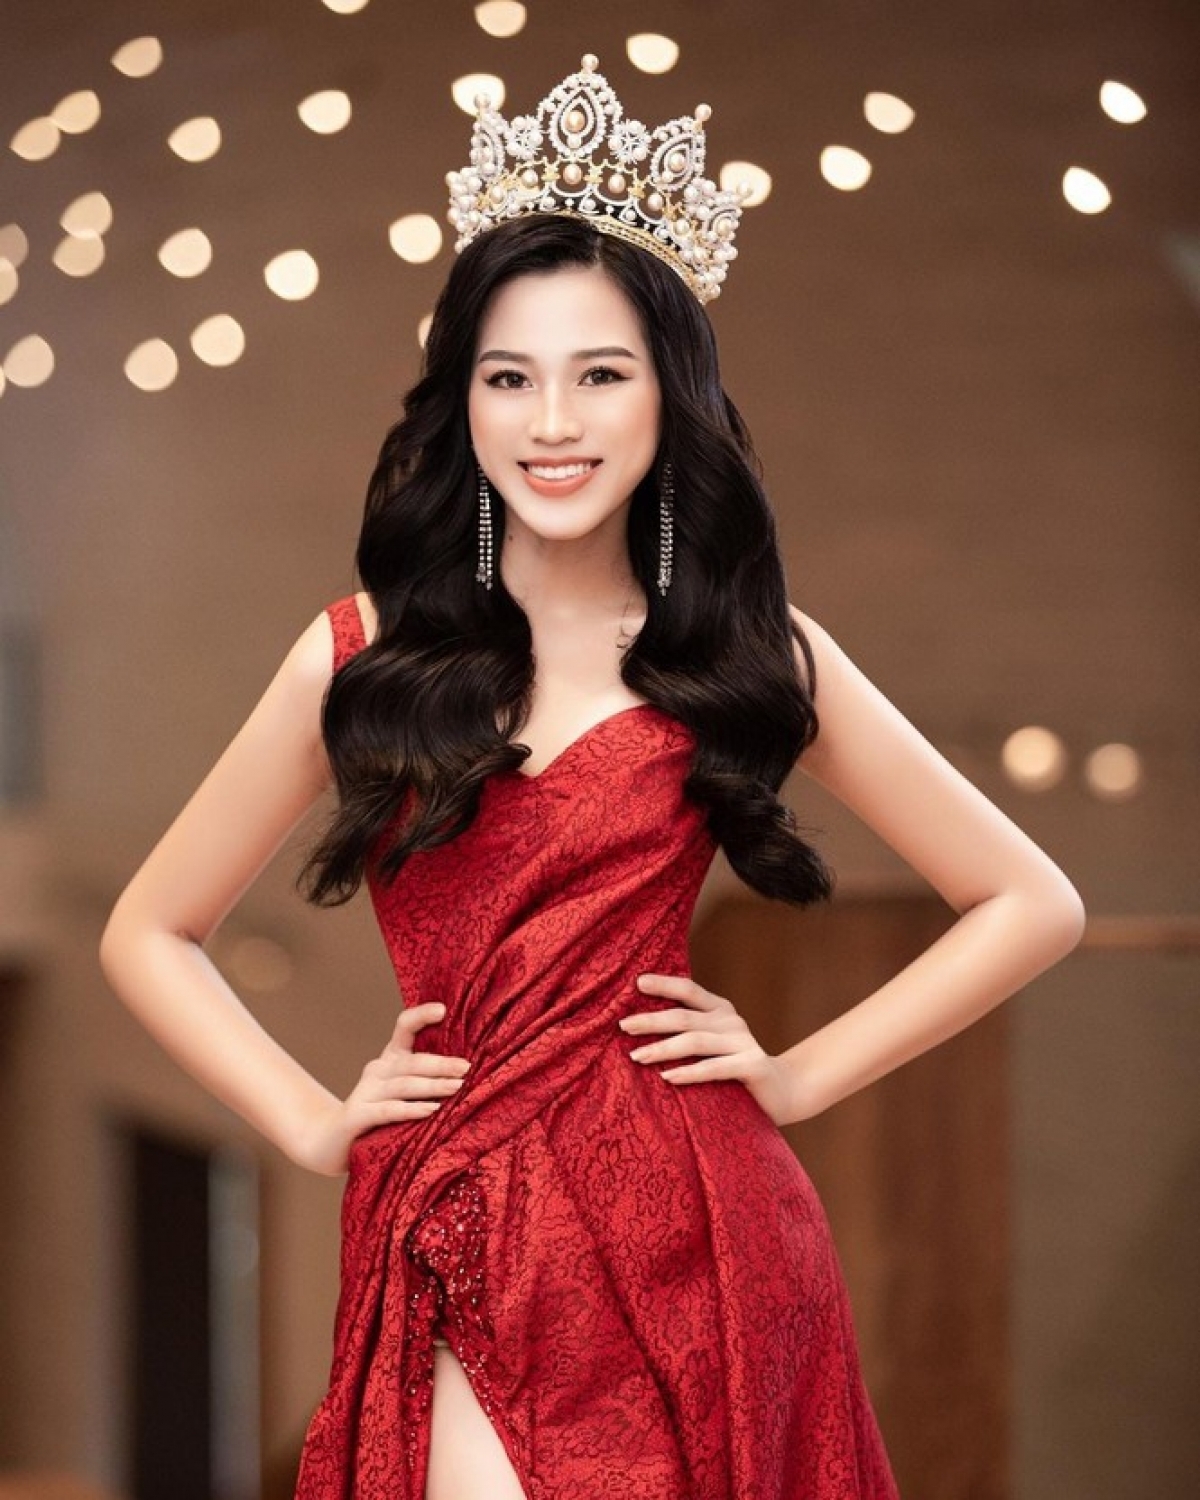 Hoa hậu Đỗ Thị Hà nóng bỏng trong bộ ảnh bikini họa tiết da rắn - Ảnh 6.